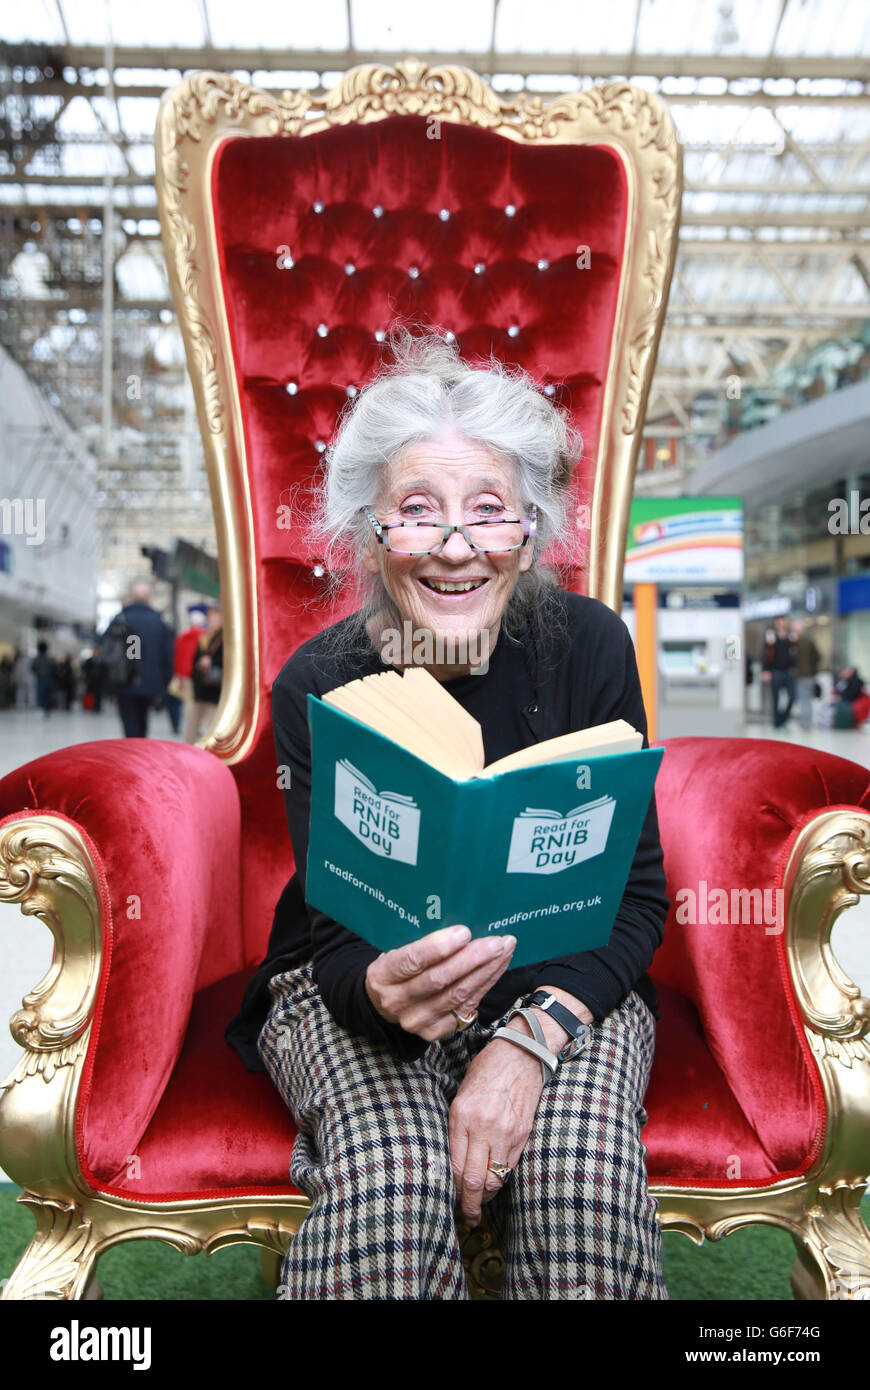 Die Schauspielerin Phyllida Law am Londoner Bahnhof Waterloo, um Passagen aus Lewis Carrolls Klassiker Alice's Adventures in Wonderland zu notieren, um den Read für den RNIB Day zu markieren, die jährliche Wohltätigkeitsveranstaltung des Royal National Institute of Blind People (RNIB). Stockfoto